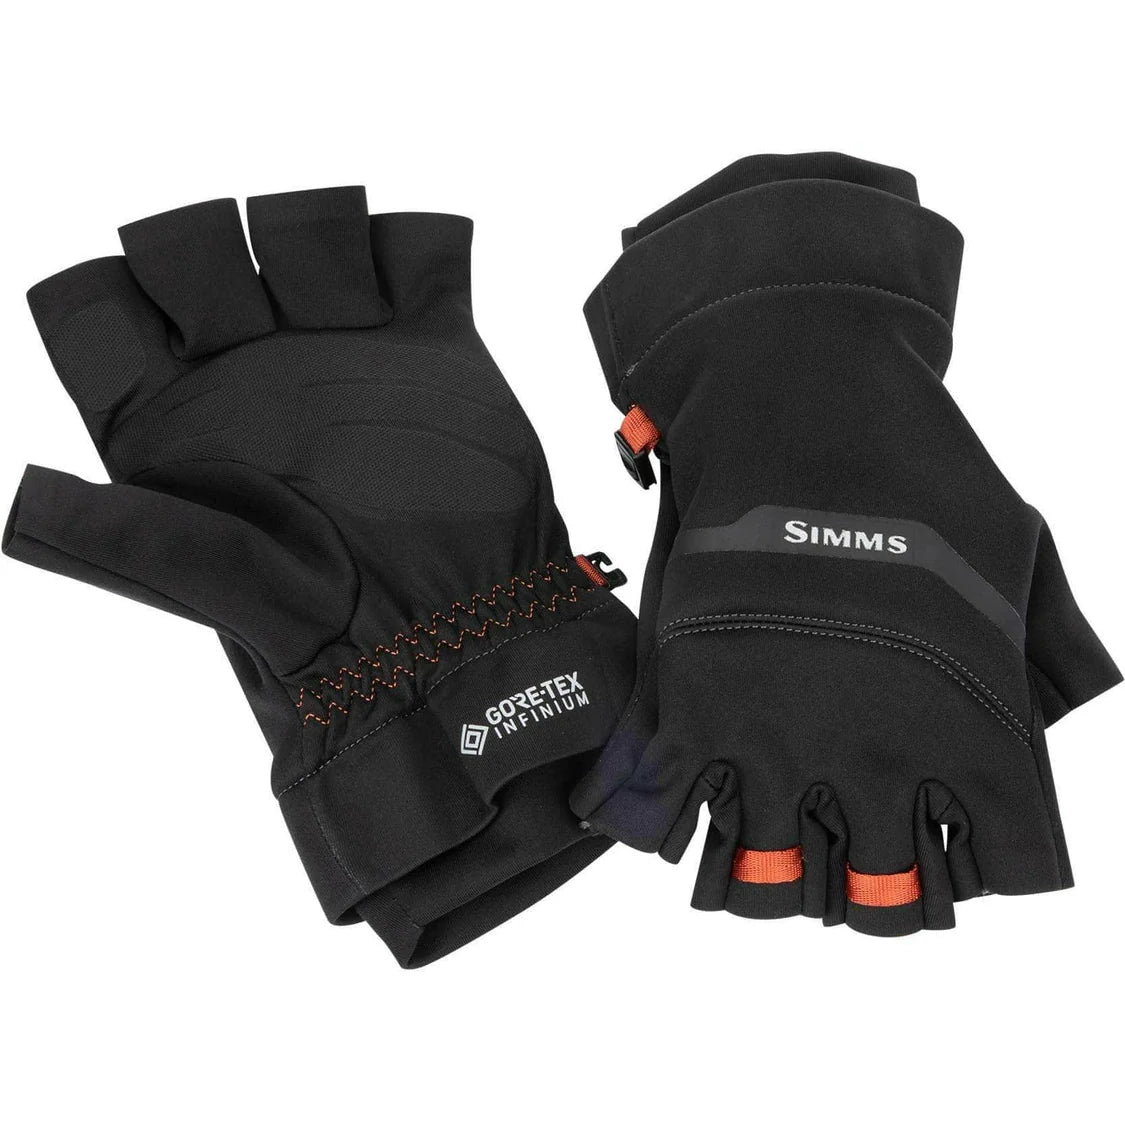 Simms GORE-TEX Infinium Half-Finger Glove